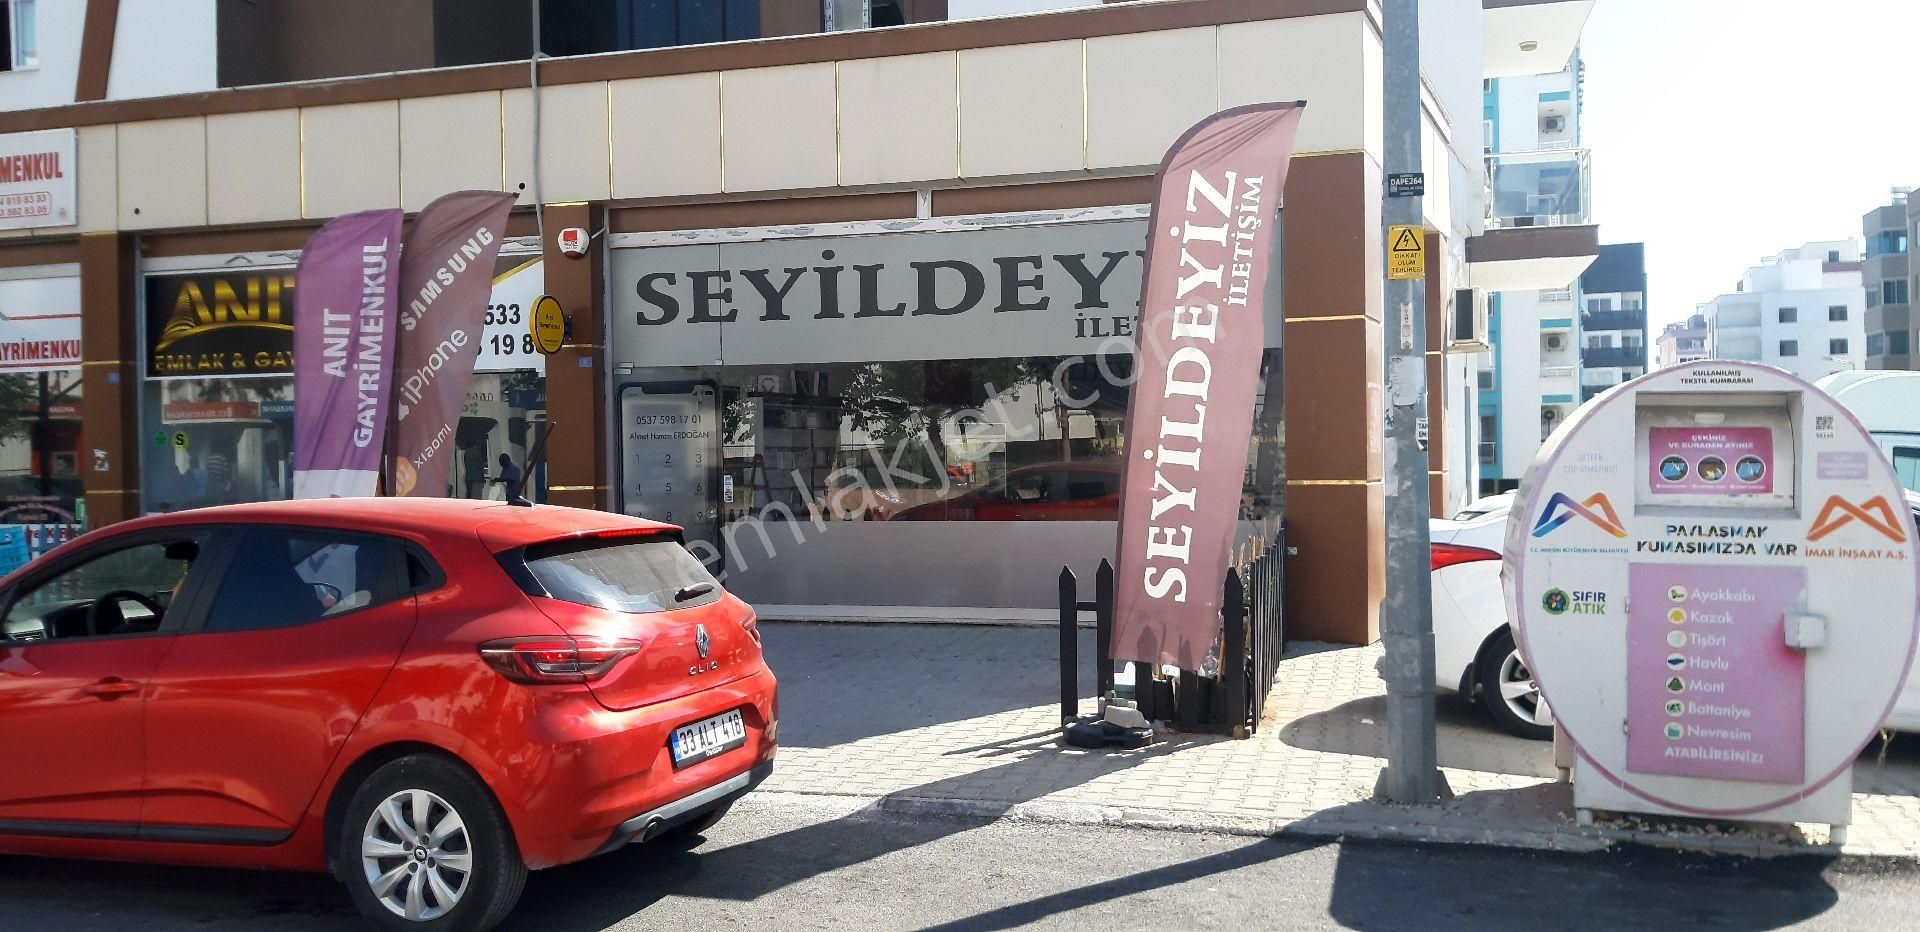 Erdemli Akdeniz Satılık Dükkan & Mağaza ANIT GAYRİMENKUL DEN SATLIK Çift cephe Dükkan 